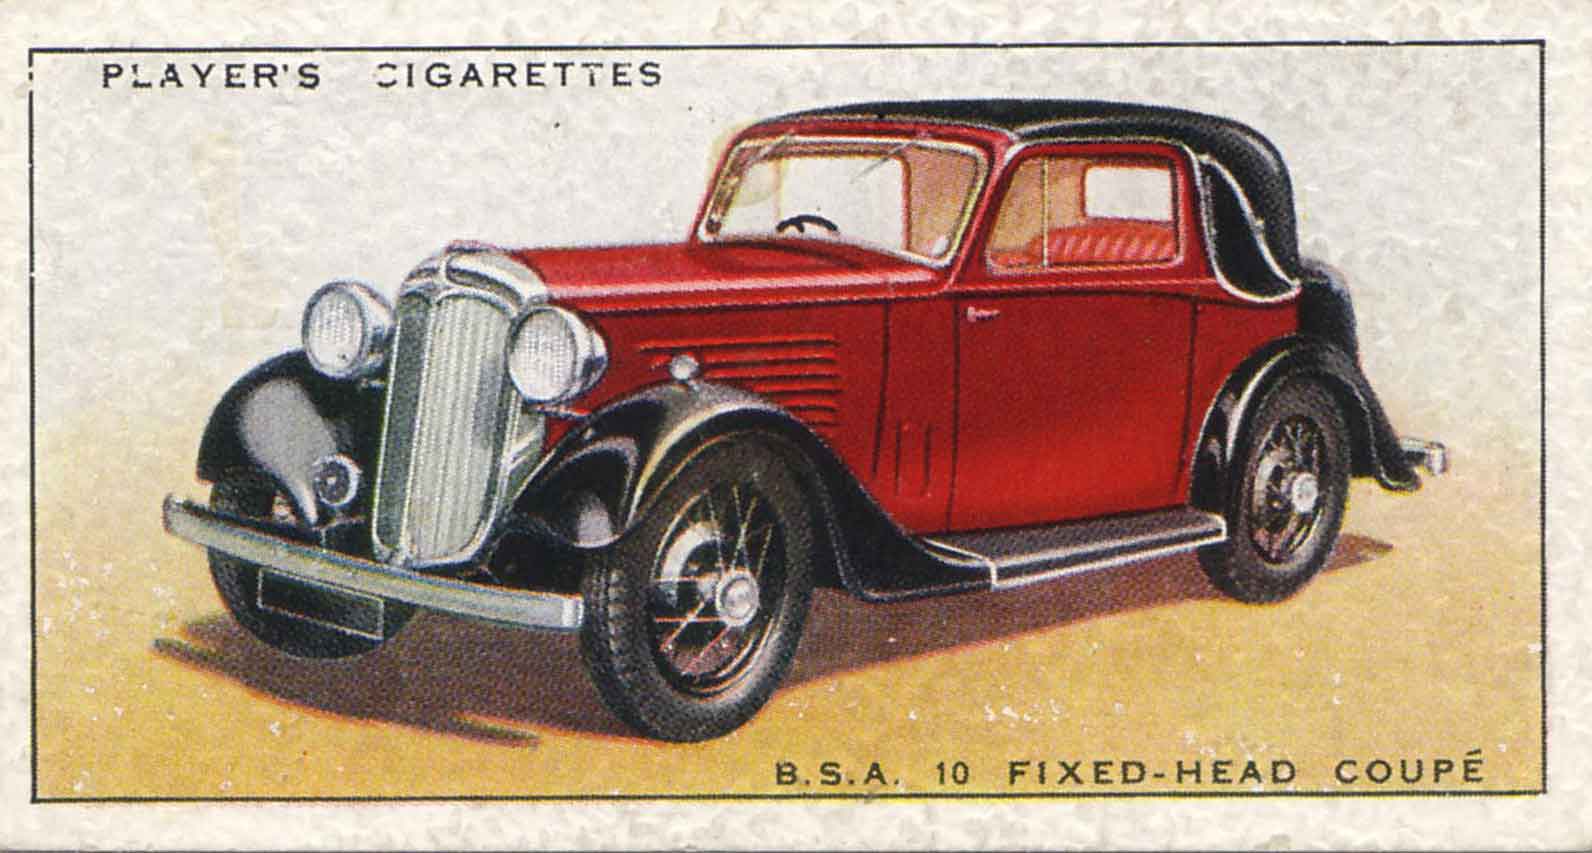 BSA 10 Fixed-Head Coupé. 1937 cigarette card.